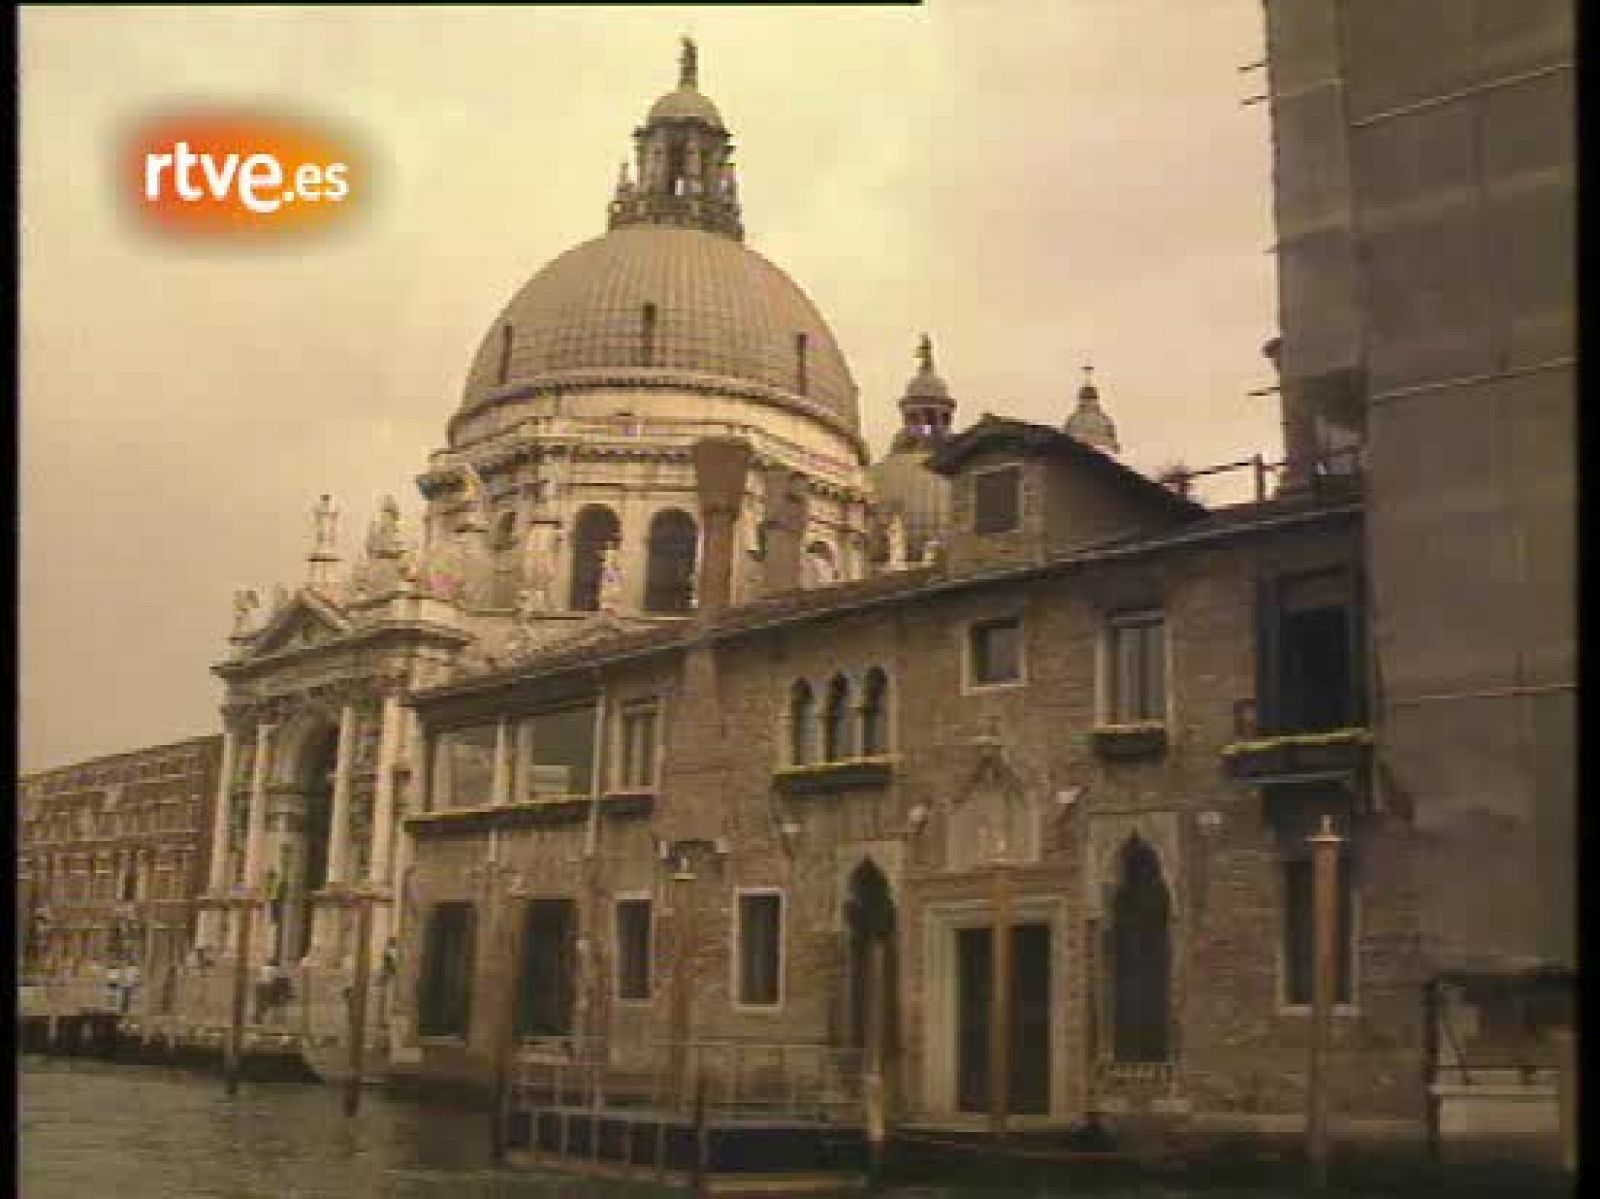 Mostra de Venecia: Bodas de oro (1993)